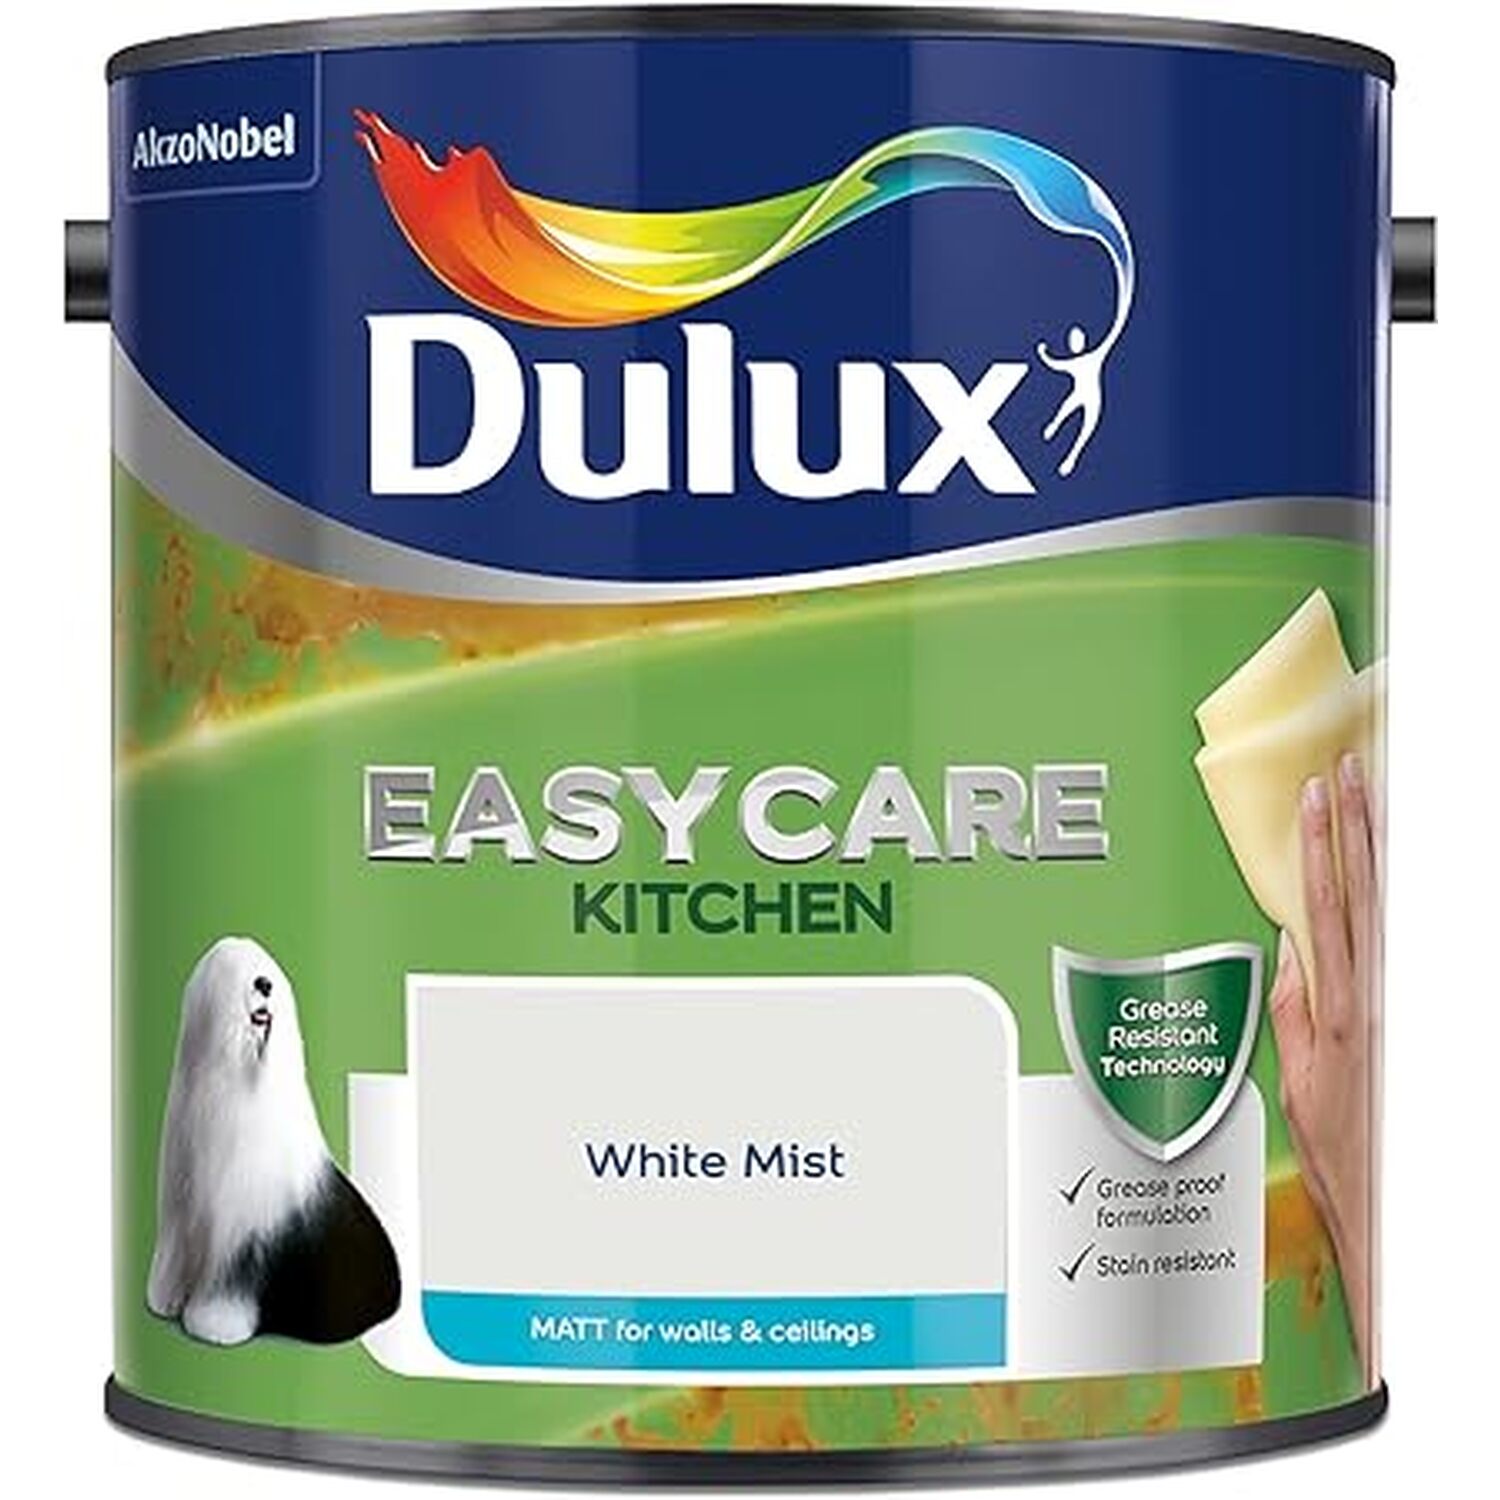 Dulux Easycare Kitchen White Mist Matt Emulsion Paint 2.5L Image 2